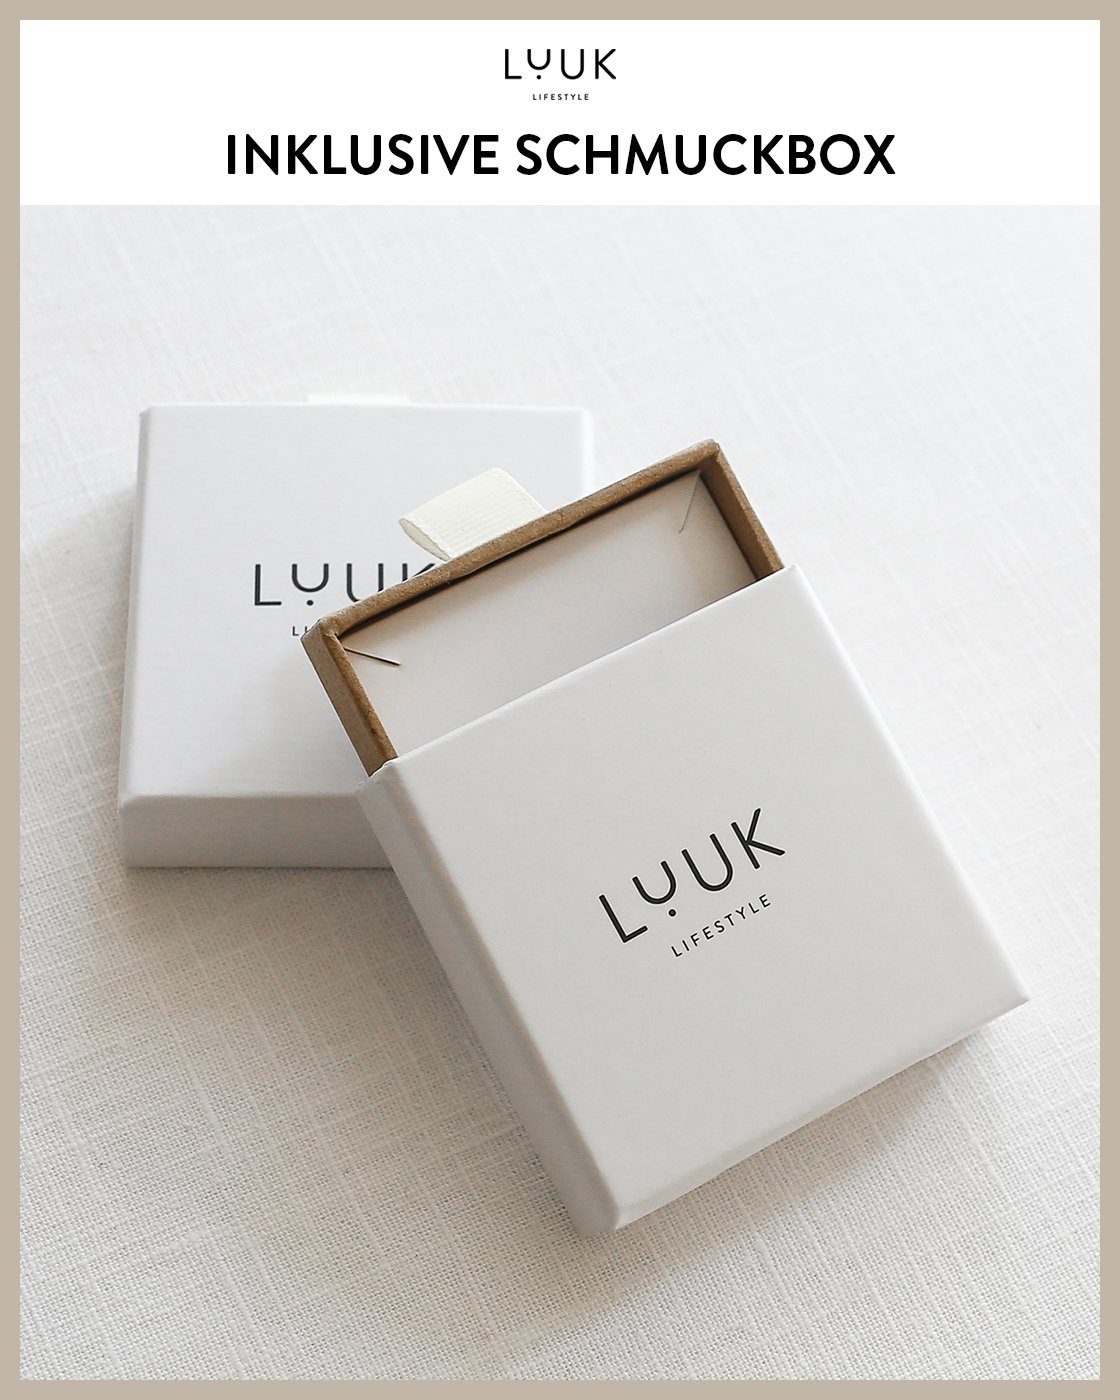 Rosé LUUK Schmuckbox Coin, wasserfest & Ohrstecker alltagstauglich, LIFESTYLE inklusive modernes hautverträglich, schöner Design, Paar